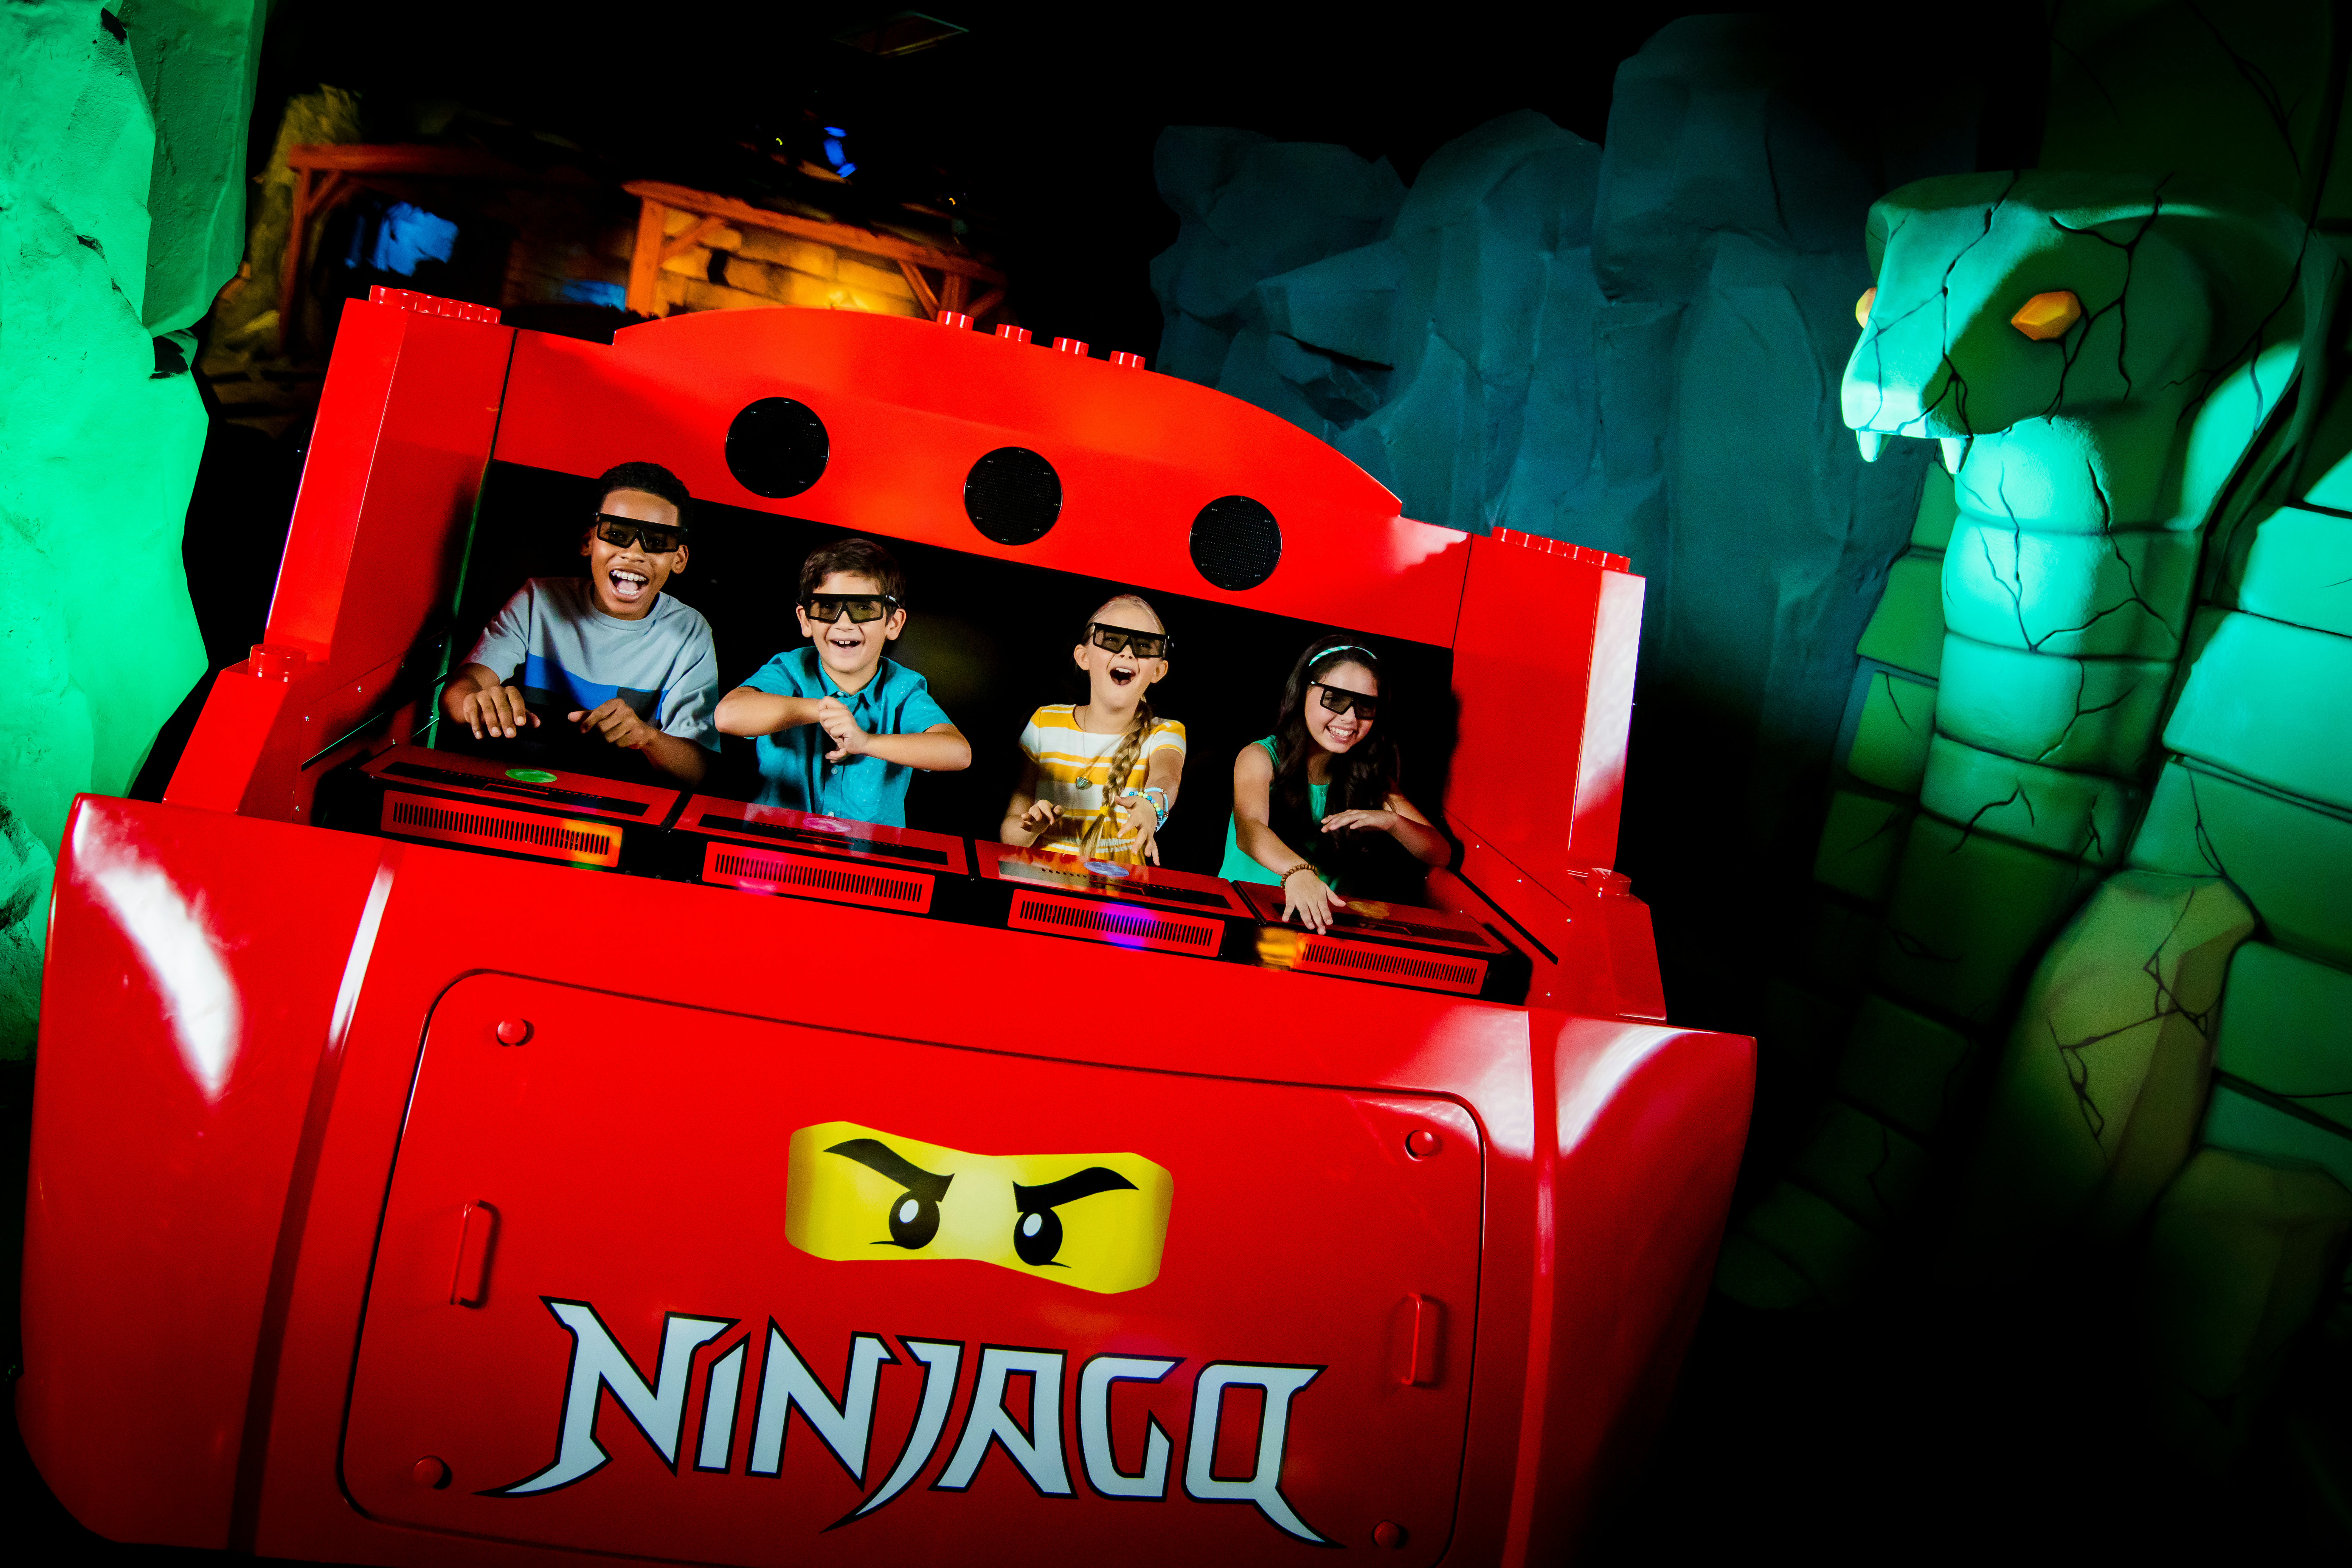 Channel your inner ninja at LEGOLANDâs LEGO NINJAGO Days